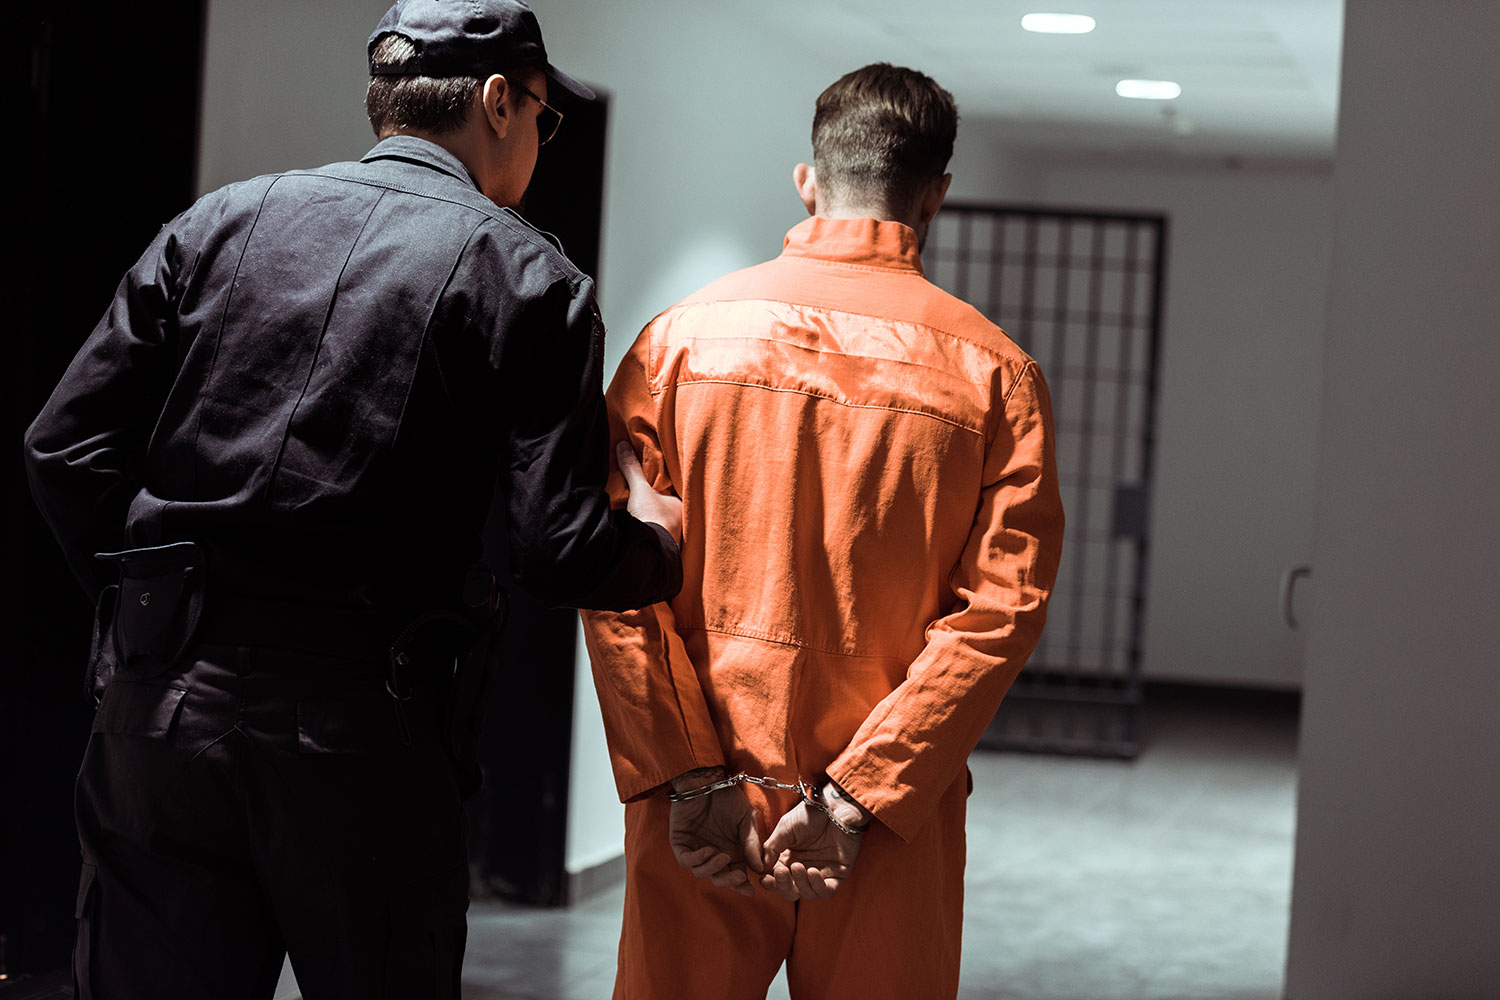 un trabajador del sector de la vigilancia y seguridad privada acompaña a un recluso en una prisión